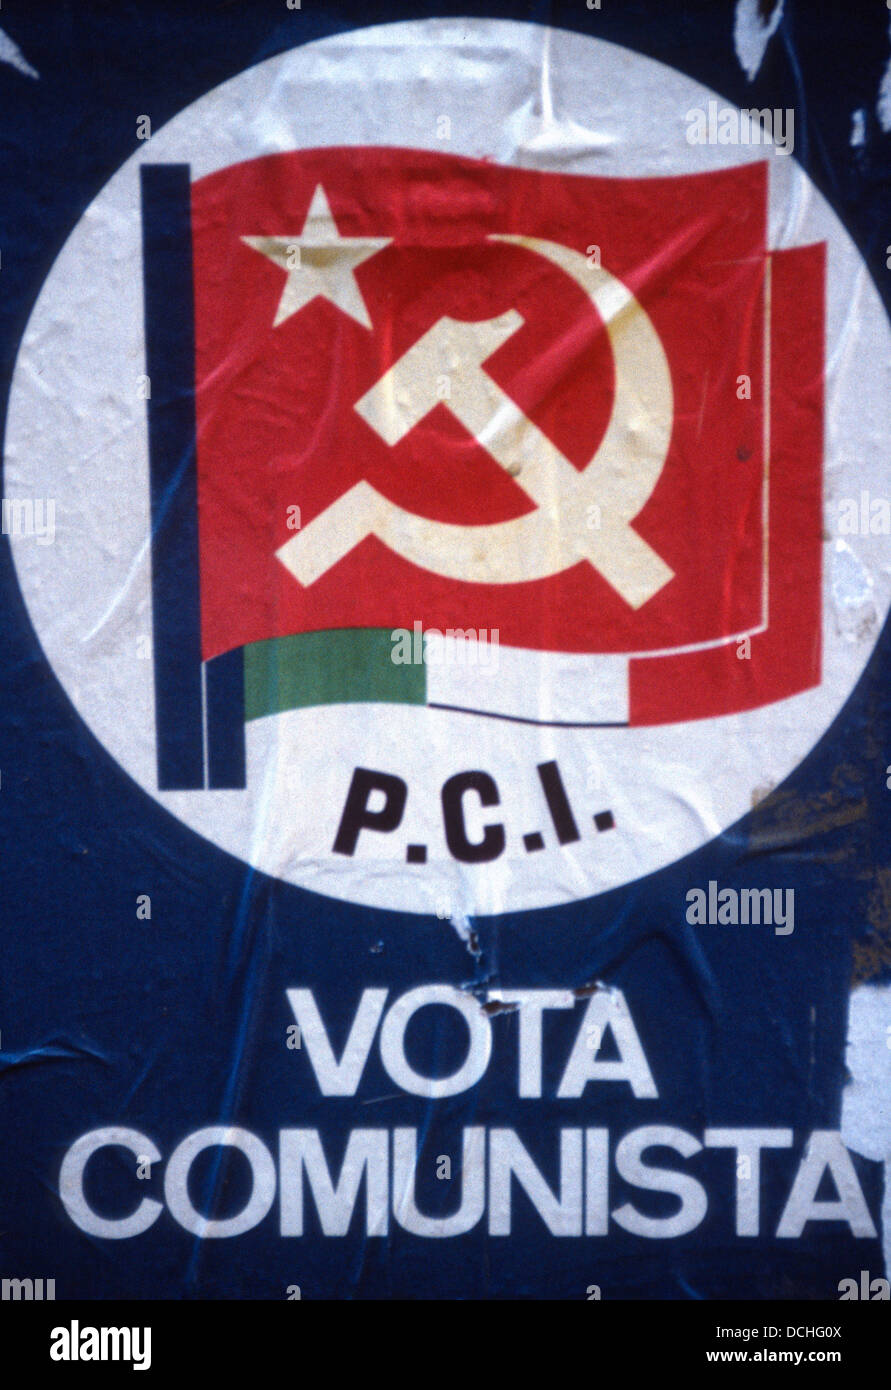 P.C.I. Vota Communista - Partito Comunista Italiano - sbiadito poster sulla parete in Italia, circa 1970 Foto Stock